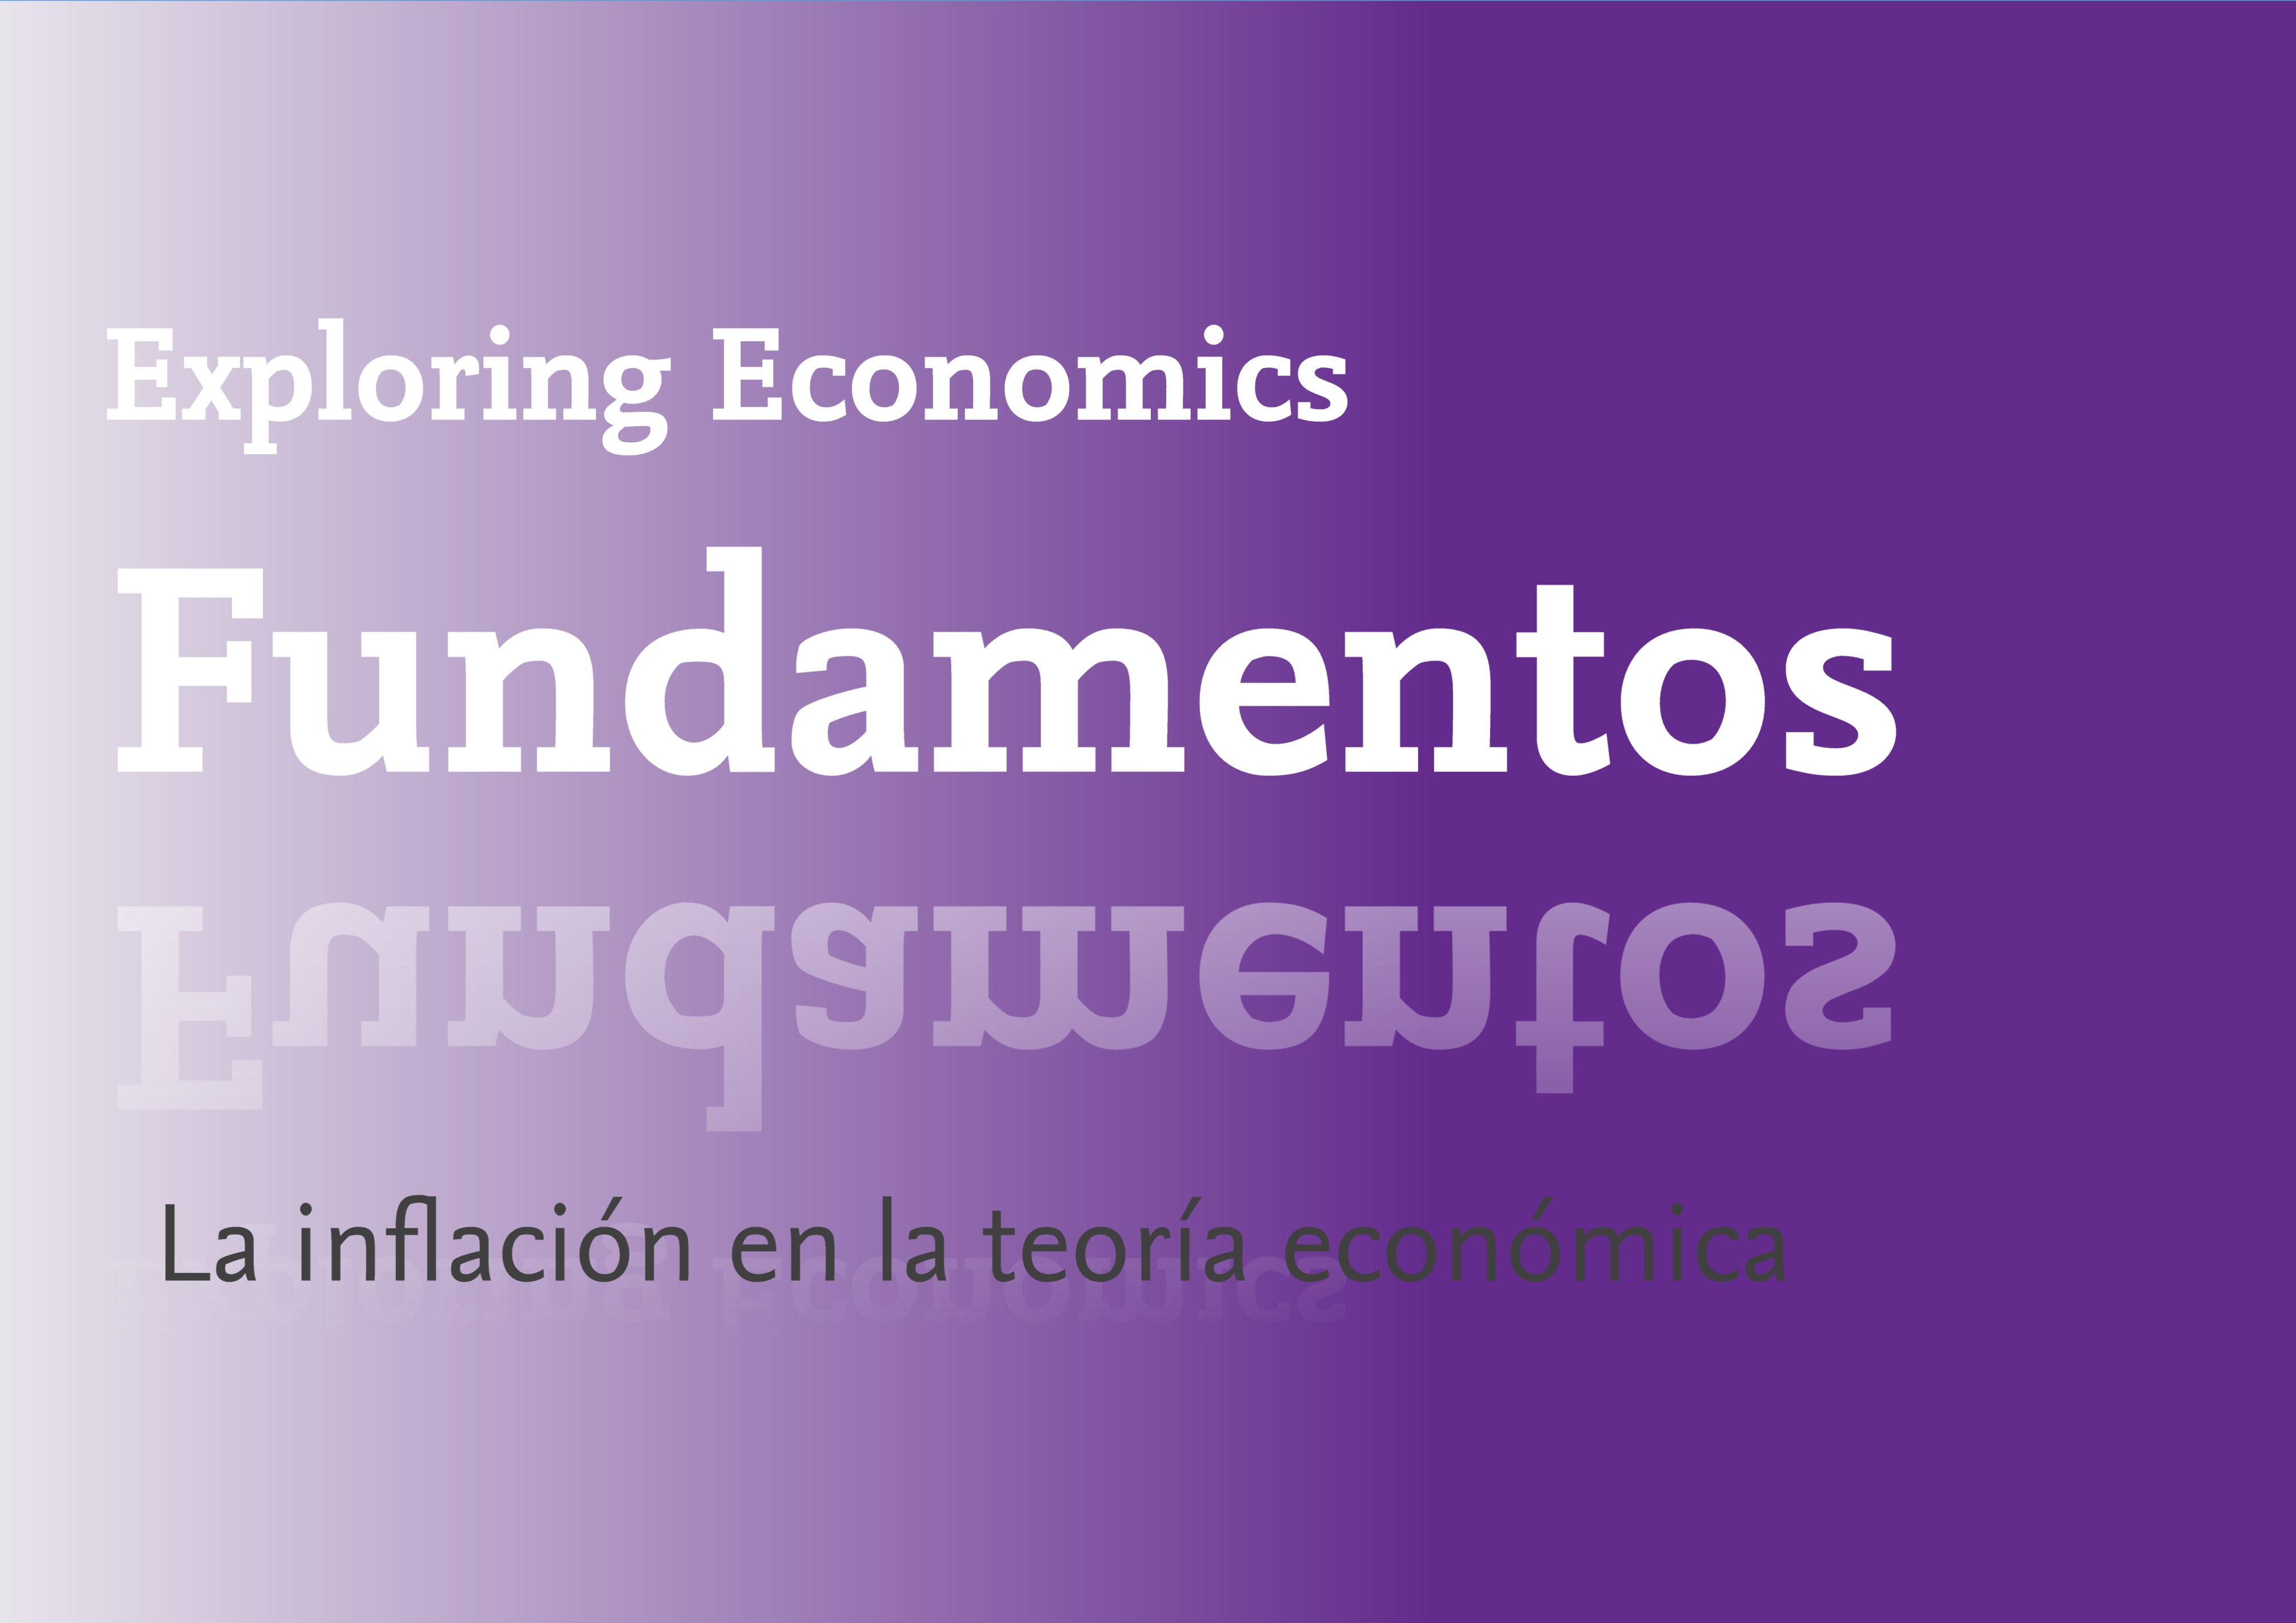 La inflación en la teoría económica | Exploring Economics